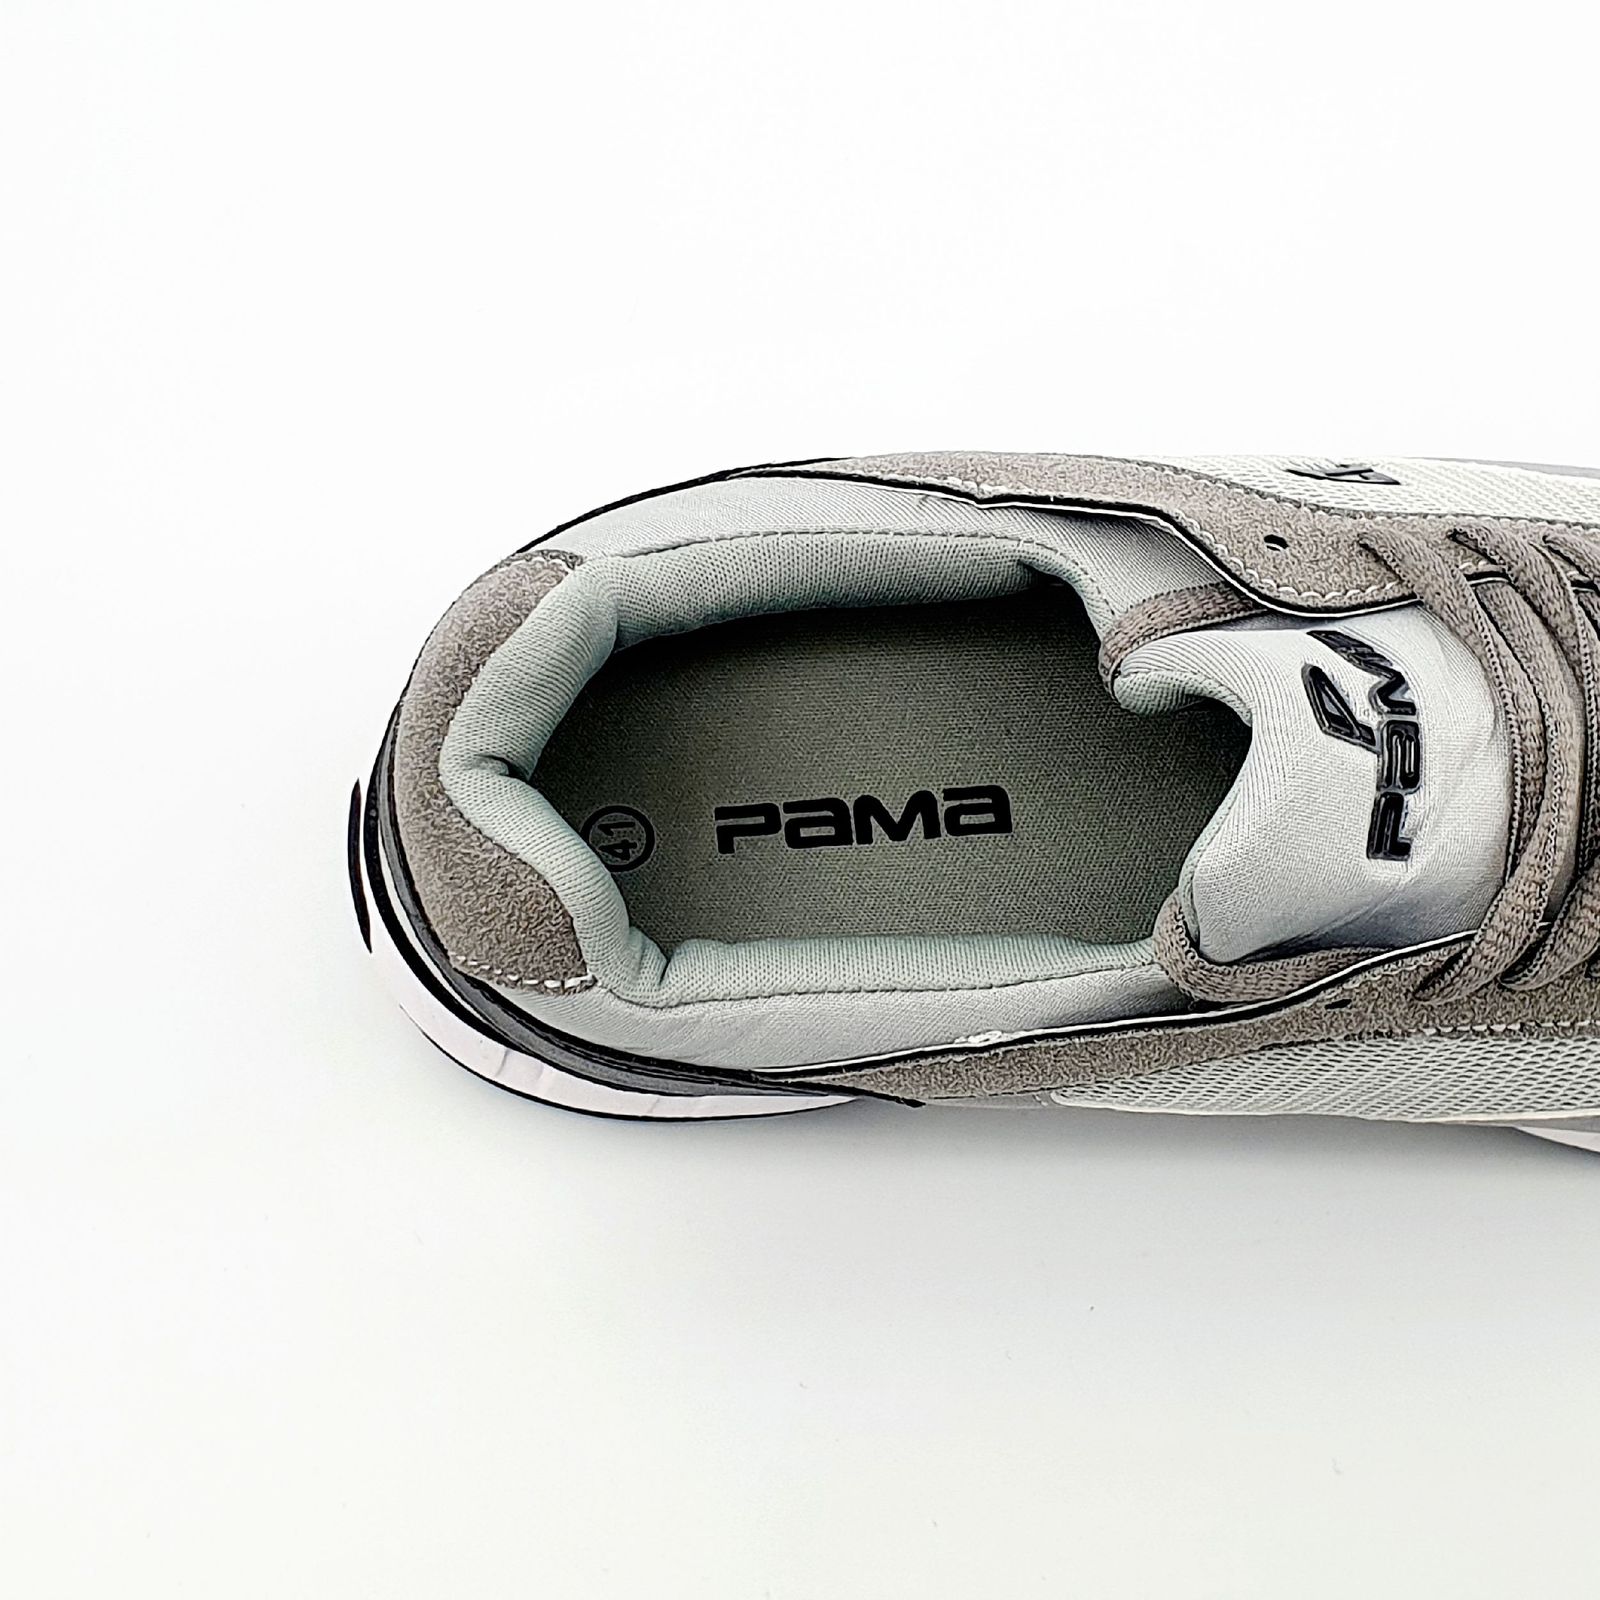 کفش پیاده روی مردانه پاما مدل VR-830 کد G1632 -  - 8